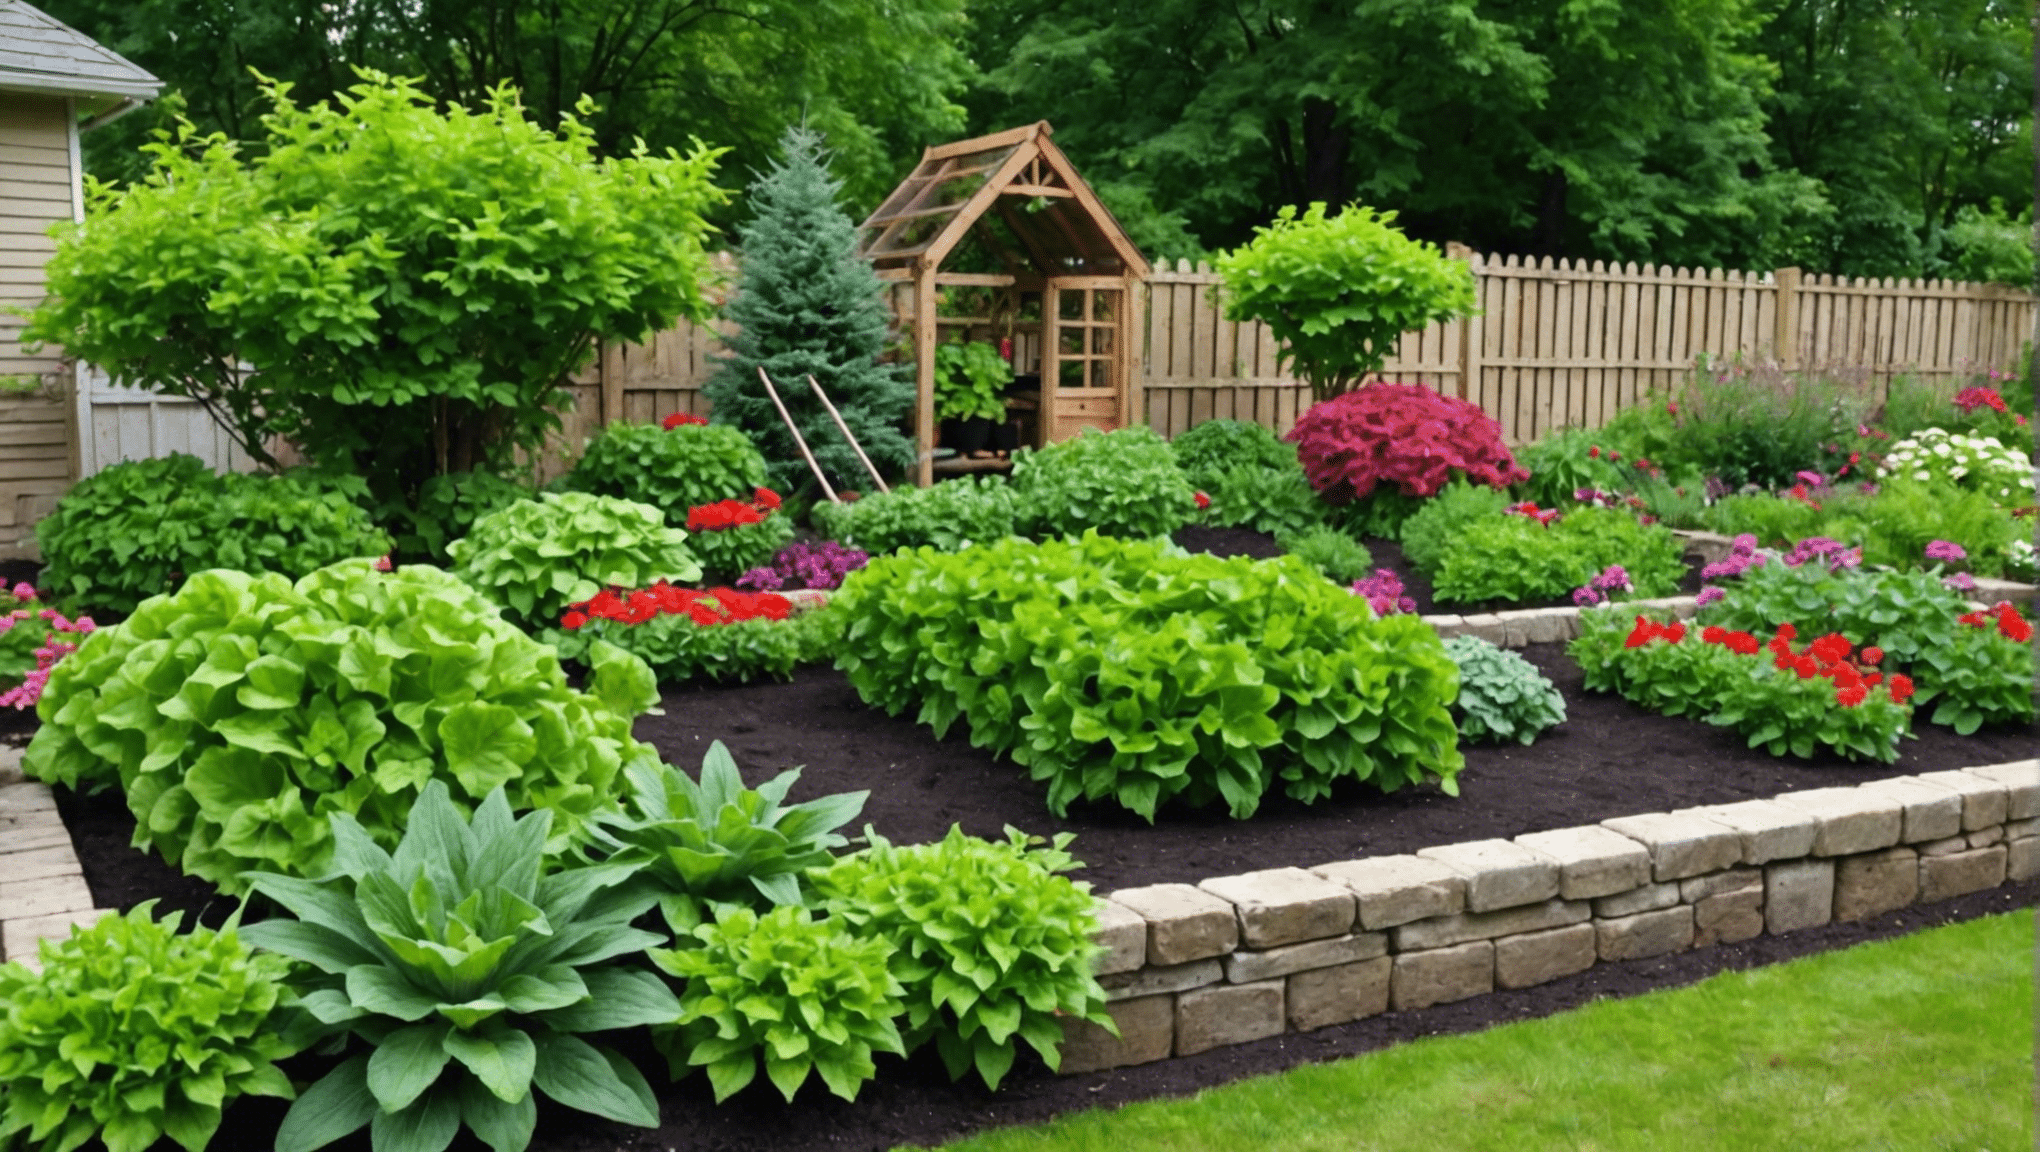 odkryj praktyczne i niedrogie wskazówki dotyczące ogrodnictwa warzywnego w Twojej przestrzeni dzięki naszym niedrogim pomysłom ogrodniczym. już dziś zacznij tworzyć dobrze prosperujący i ekonomiczny ogród warzywny.